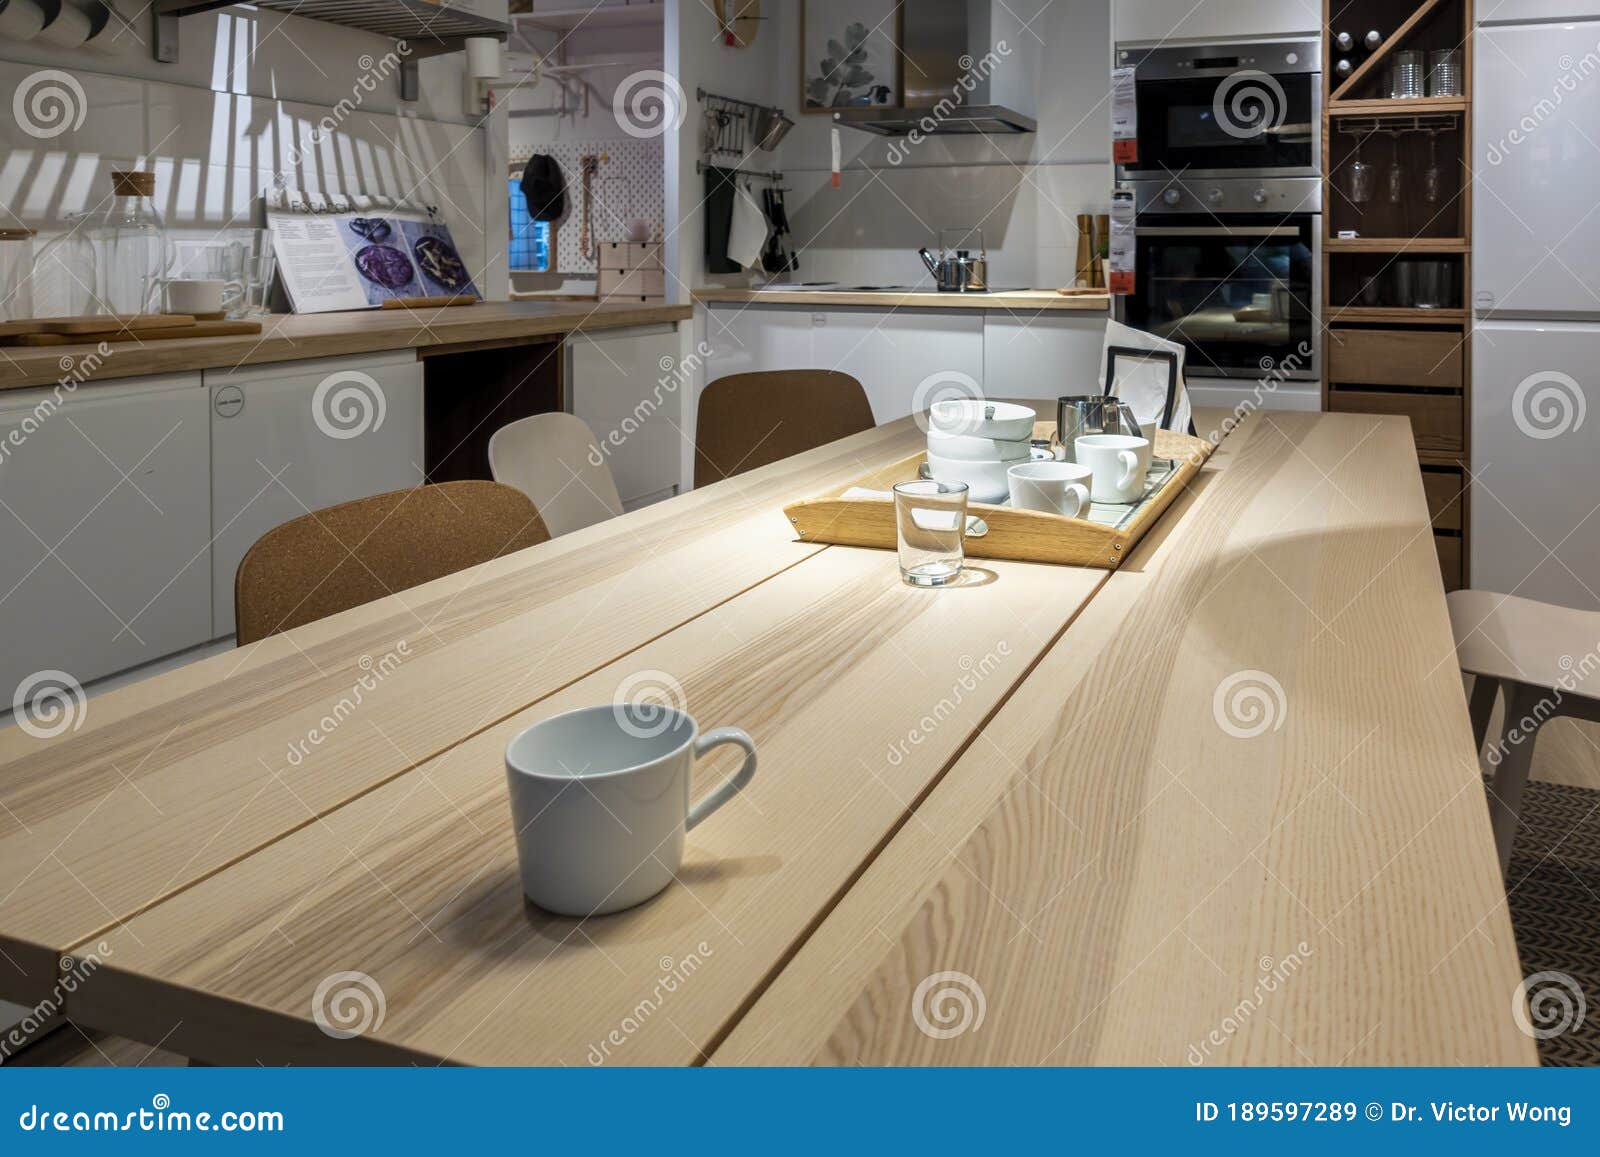 Mesa De Comedor Y Decoración De Cocina En El Ikea Store Imagen de